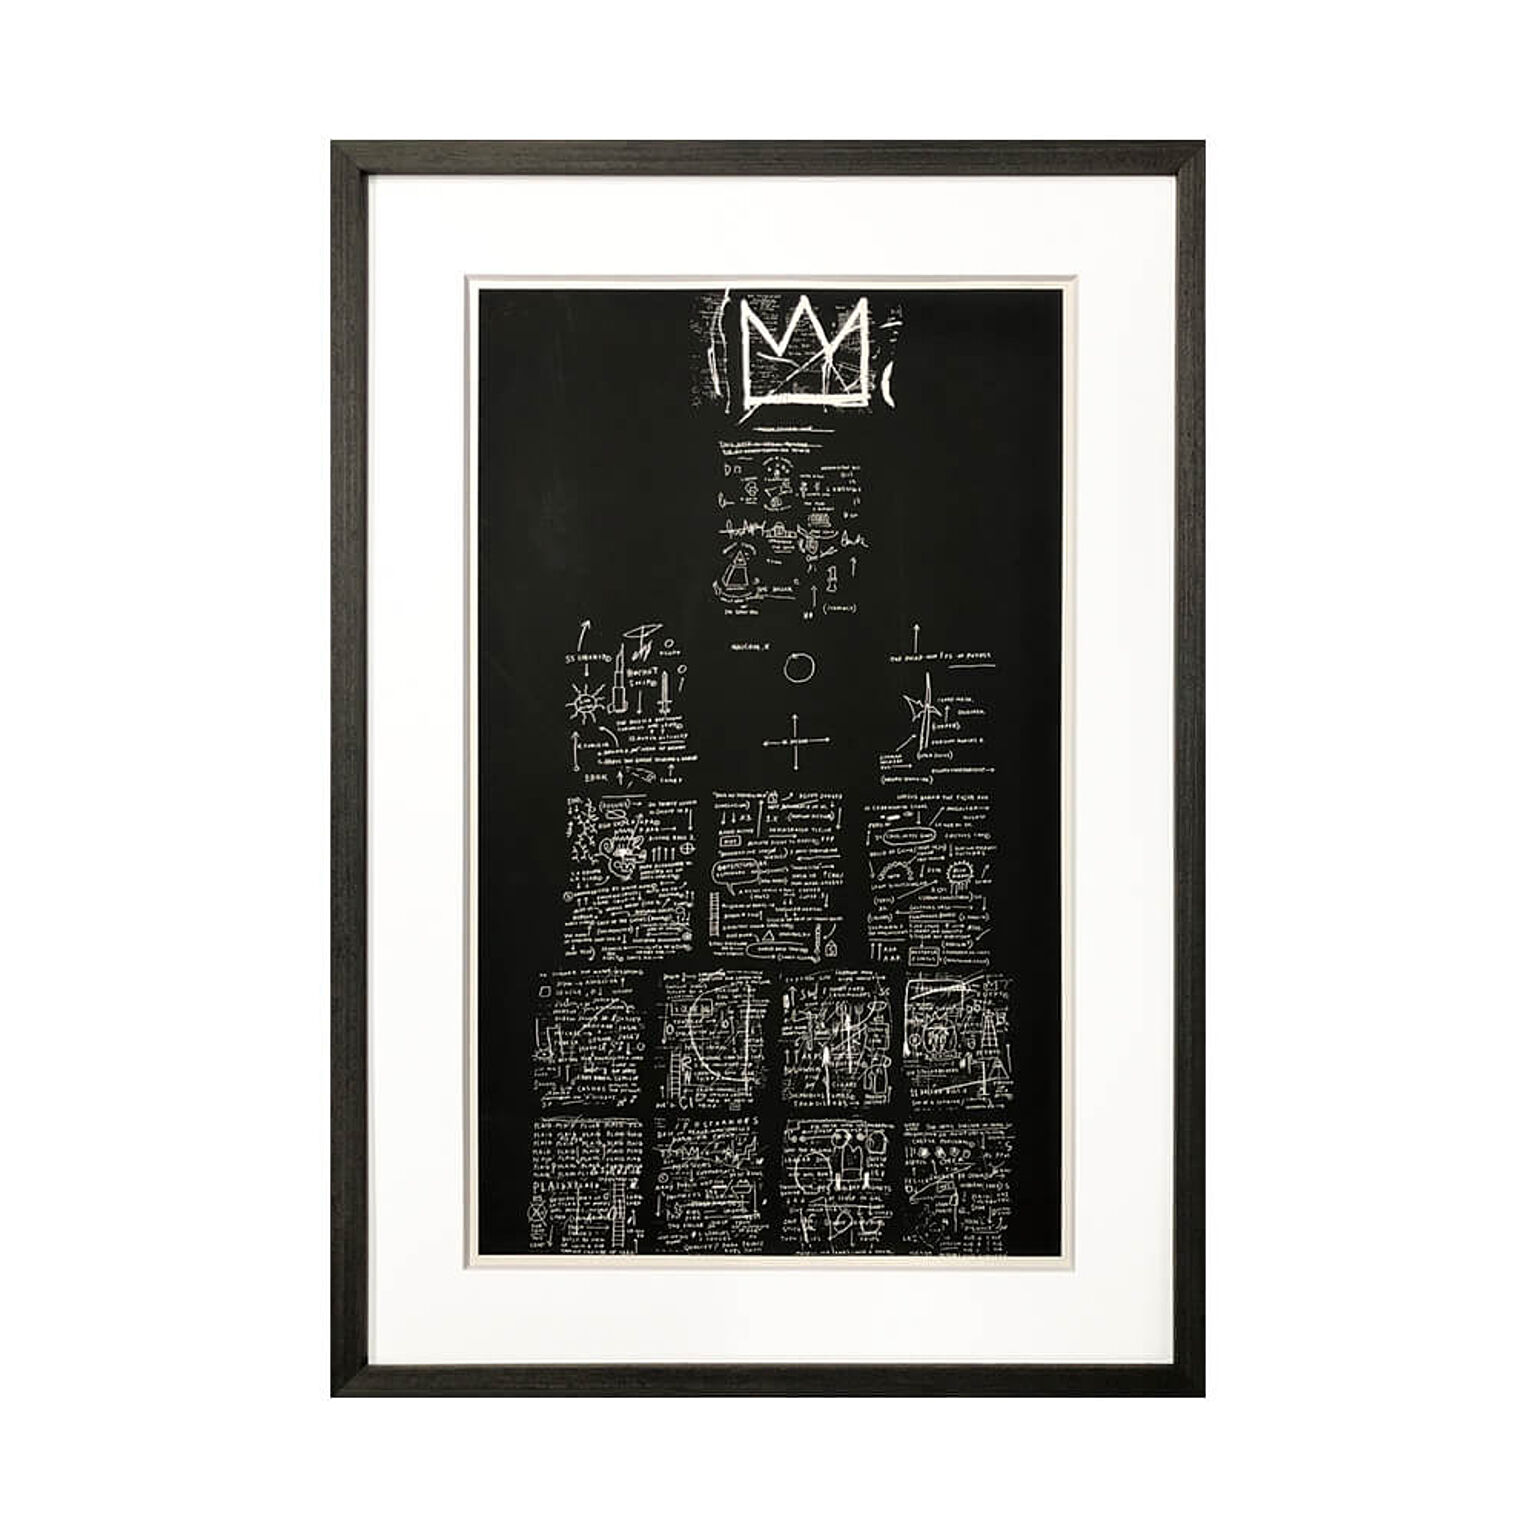 ジャン ミシェル バスキア Tuxedo 1982-3 アートポスターフレーム付き 44cm×64.5cm×3.2cm ブラック